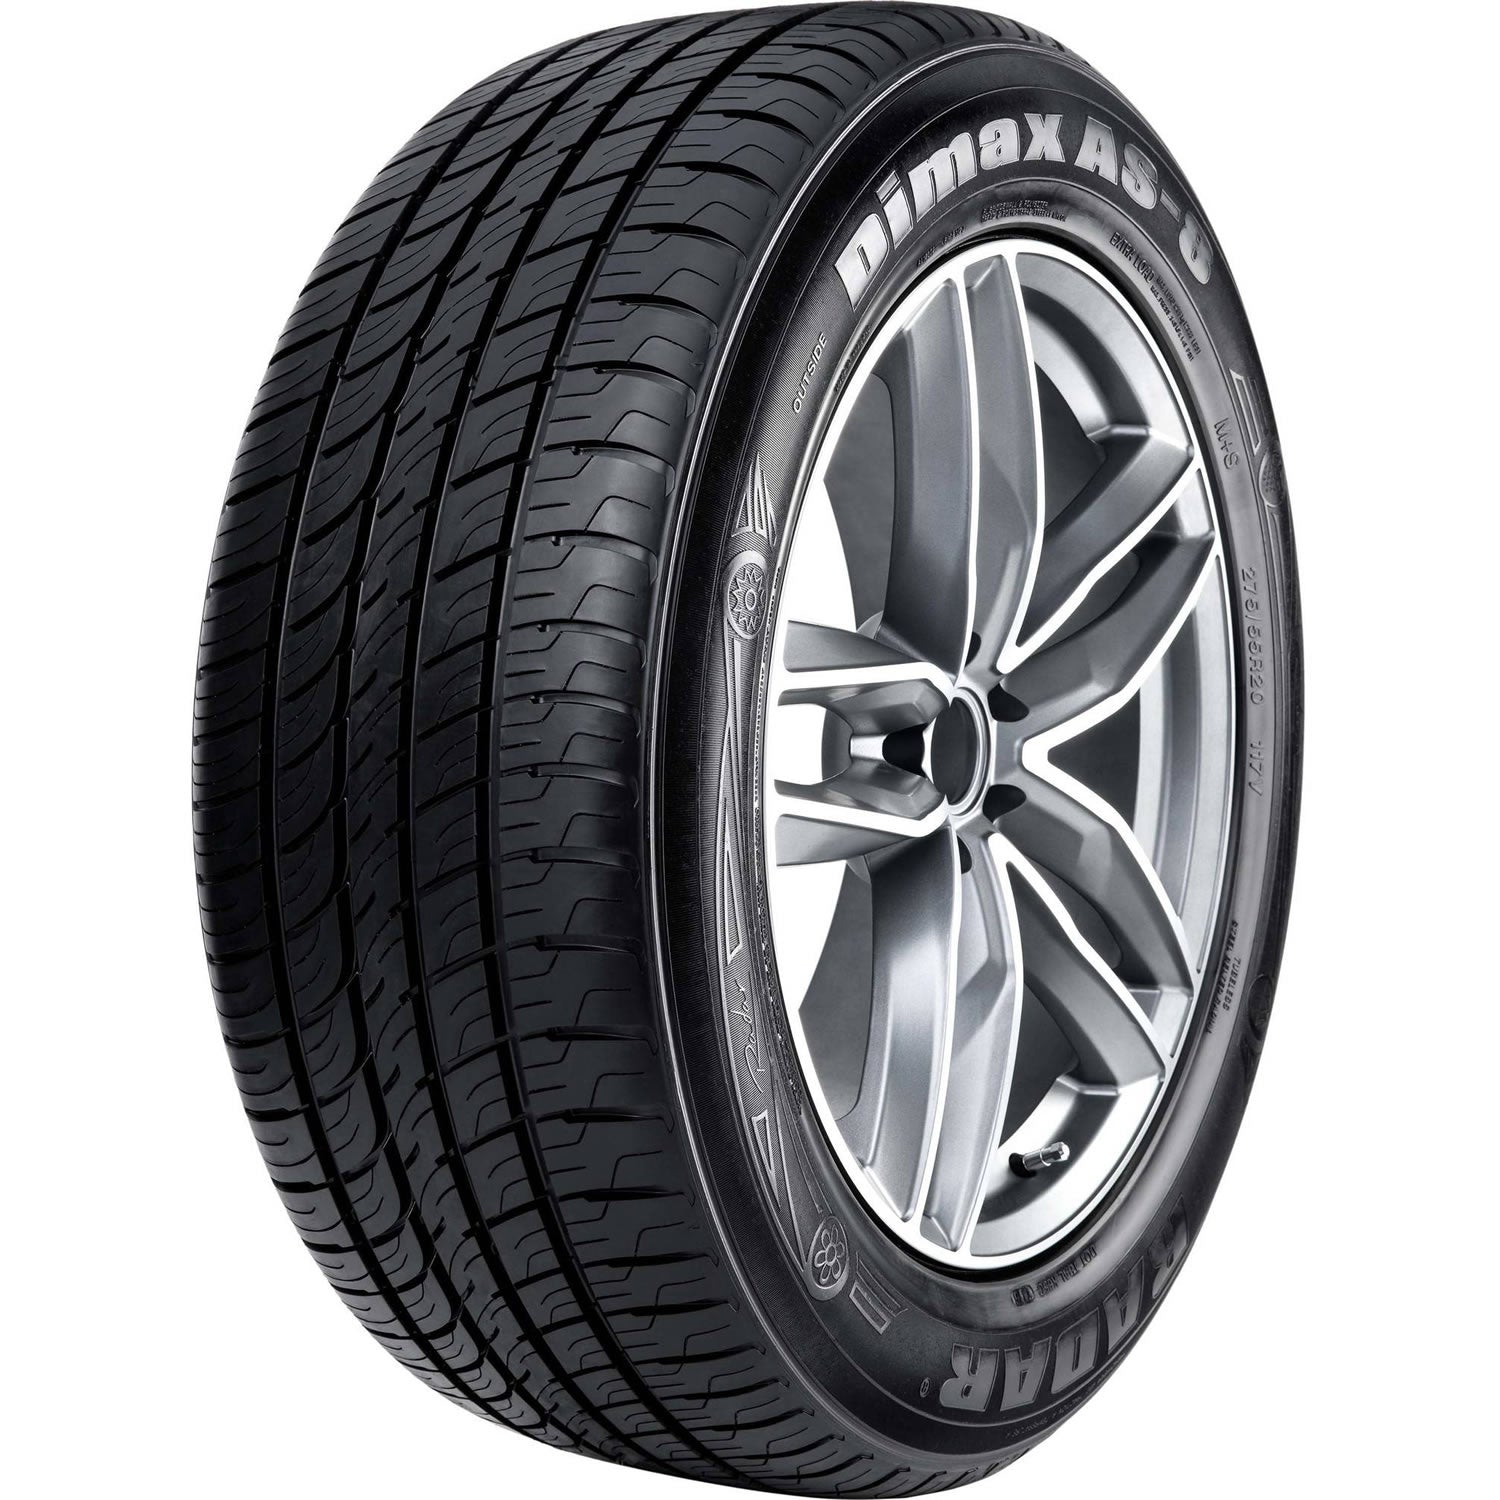 RADAR DIMAX AS-8 305/45R22 (32.8X12R 22) Tires